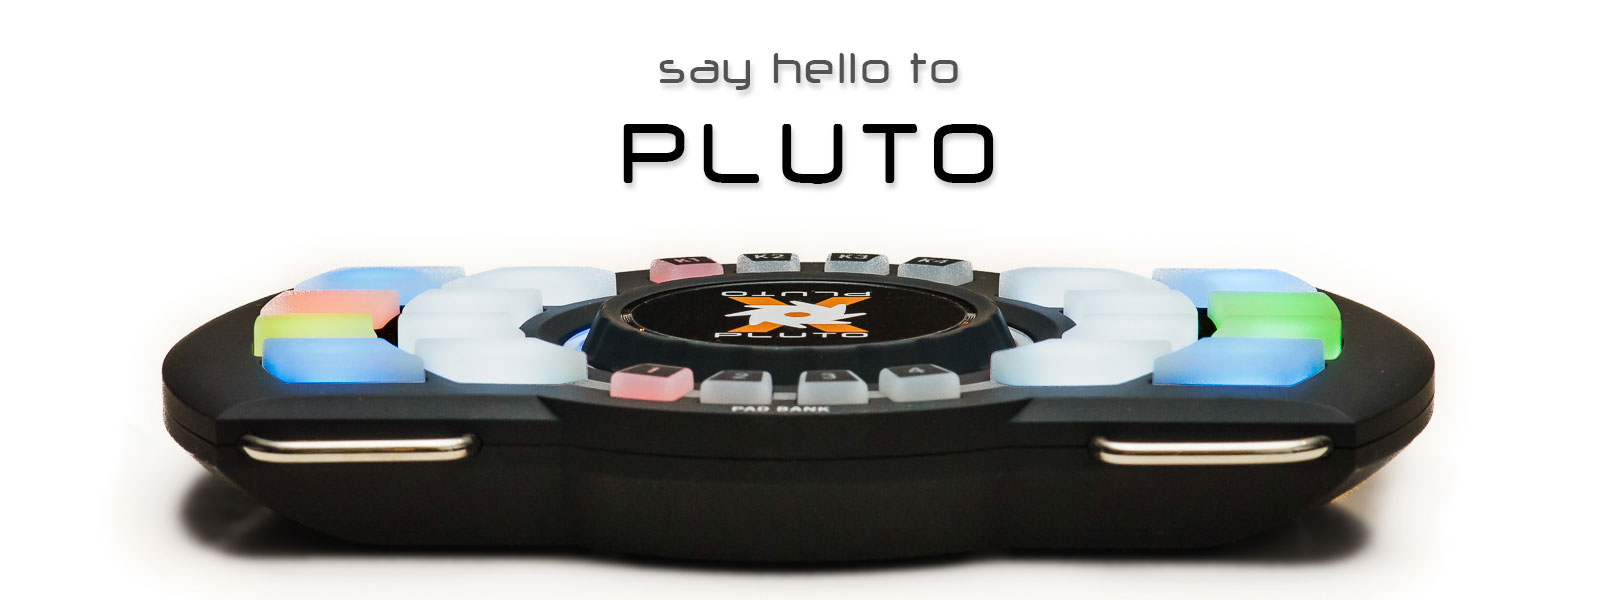 pluto-1